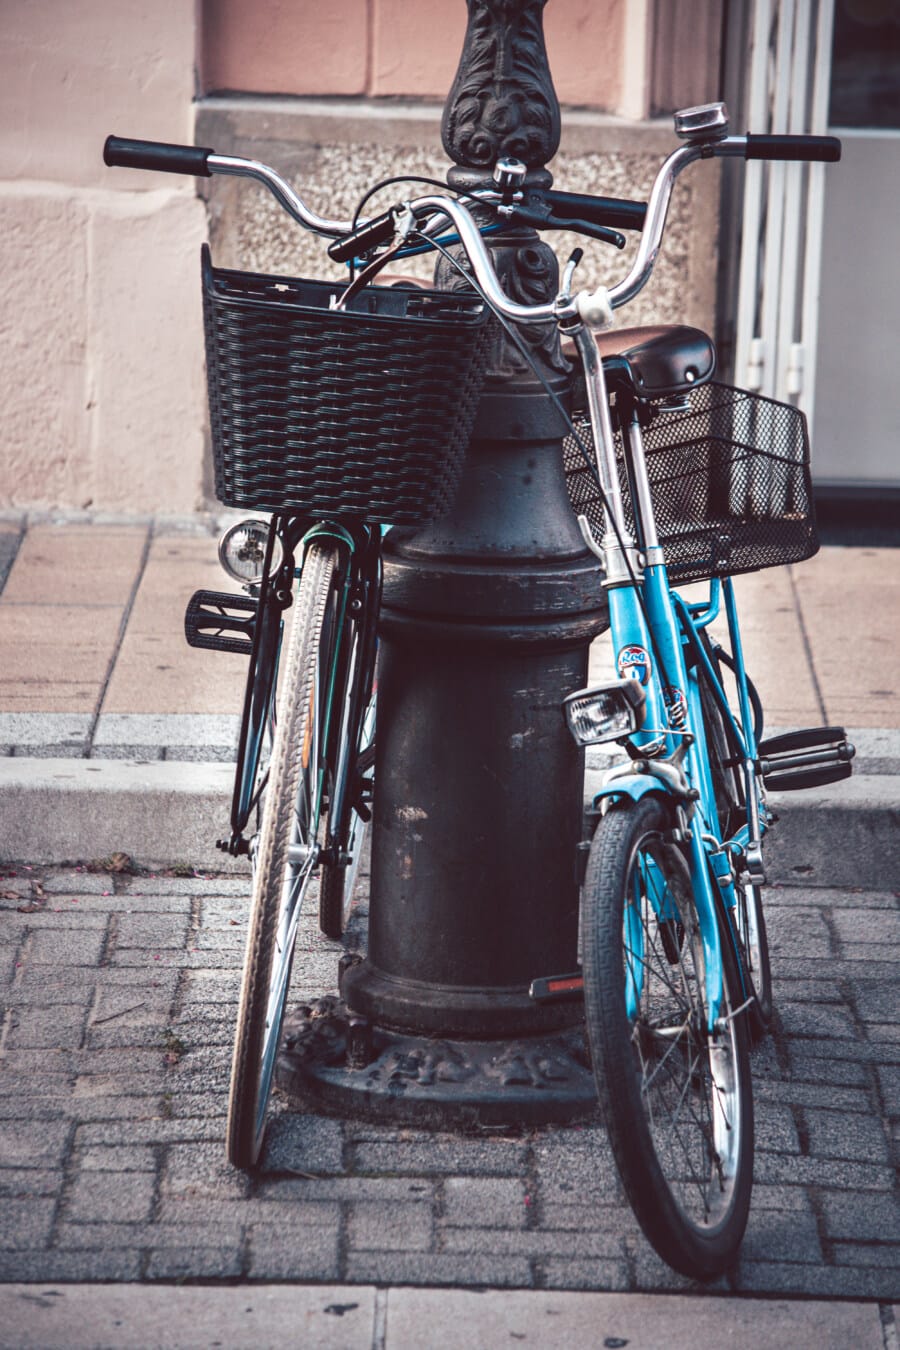 自行车, 旧样式, 柳条筐, 法国, 方向盘, 怀旧, 路面, 街道, 停车, 轮